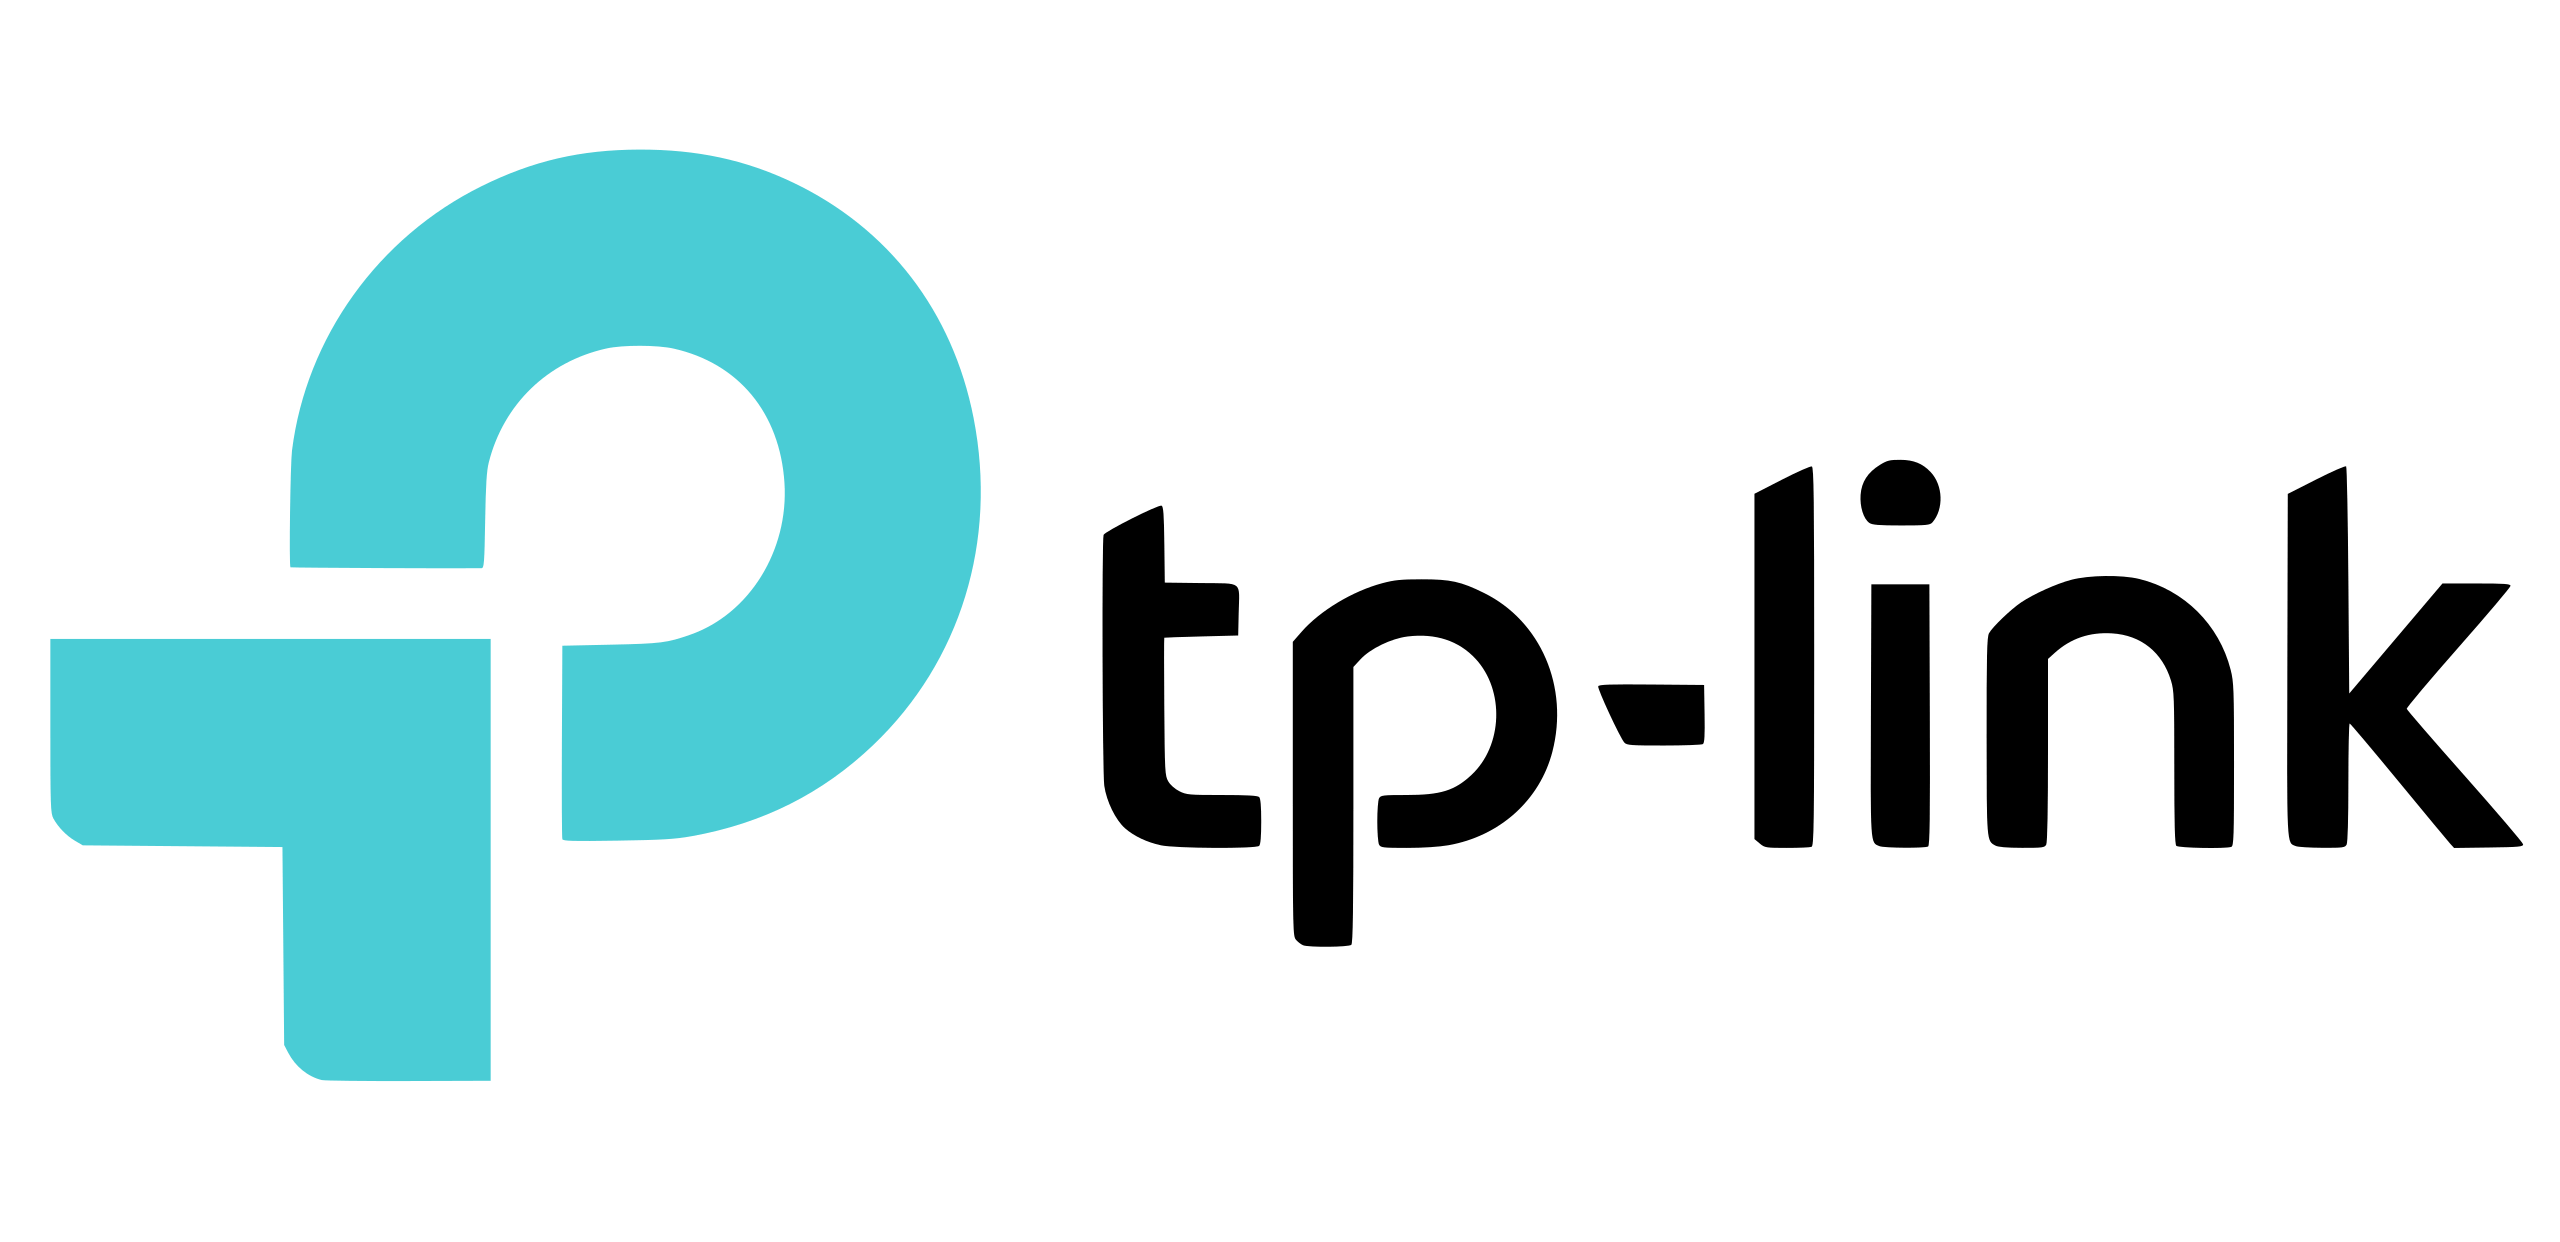 TPLINK Logo 2.svg compressed | Vox | Wi-Fi